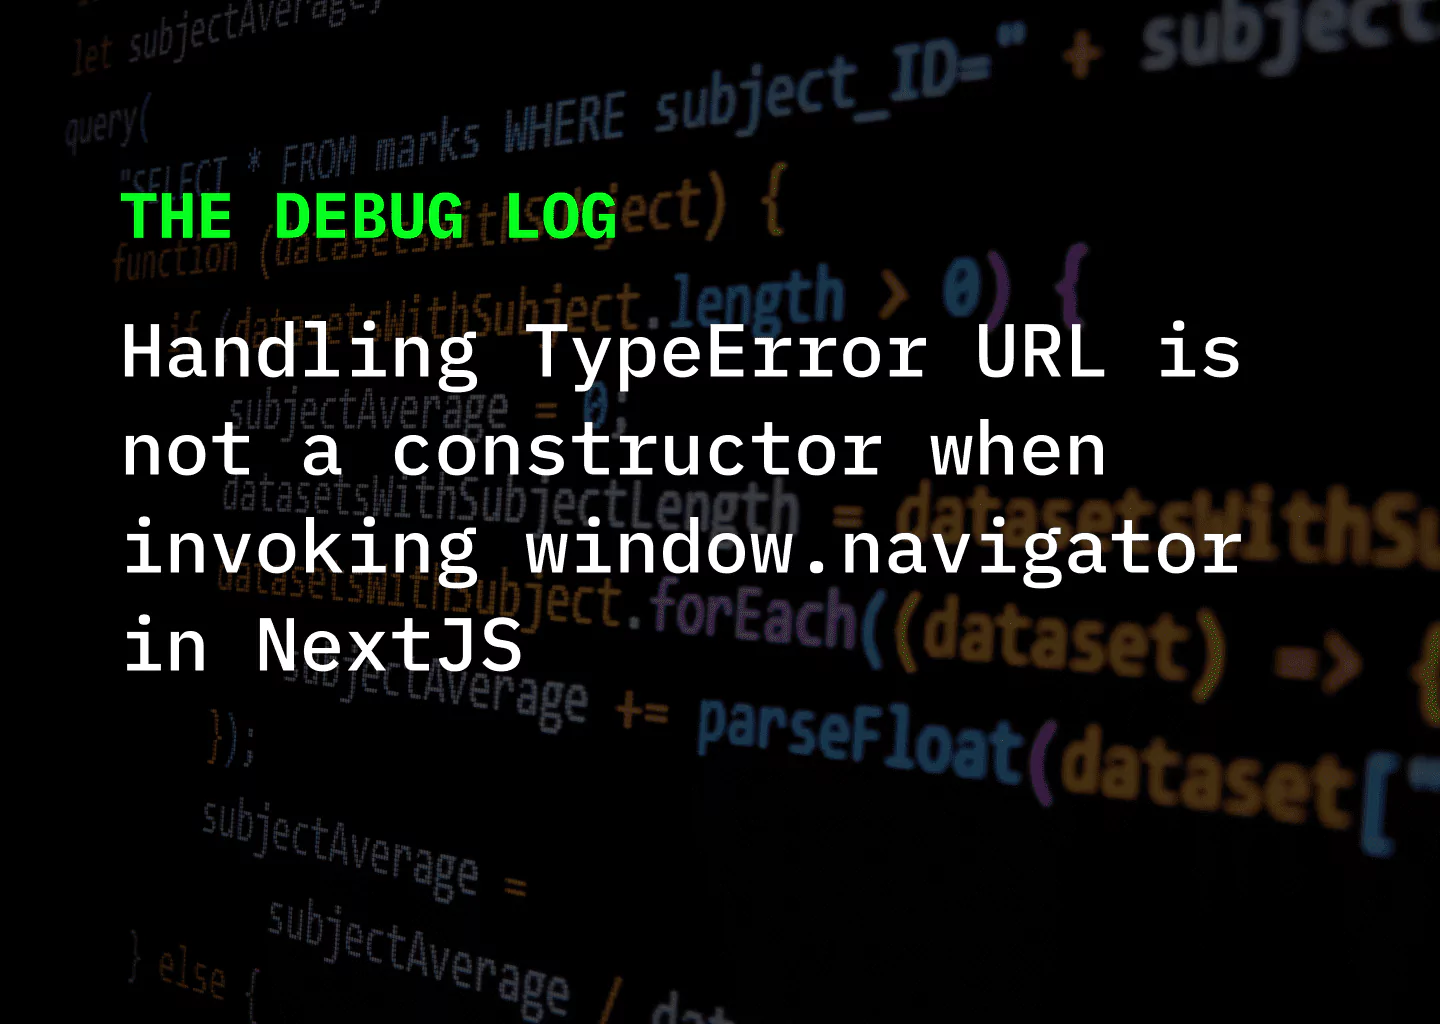 Handling TypeError URL is not a constructor when invoking window.navigator in NextJS